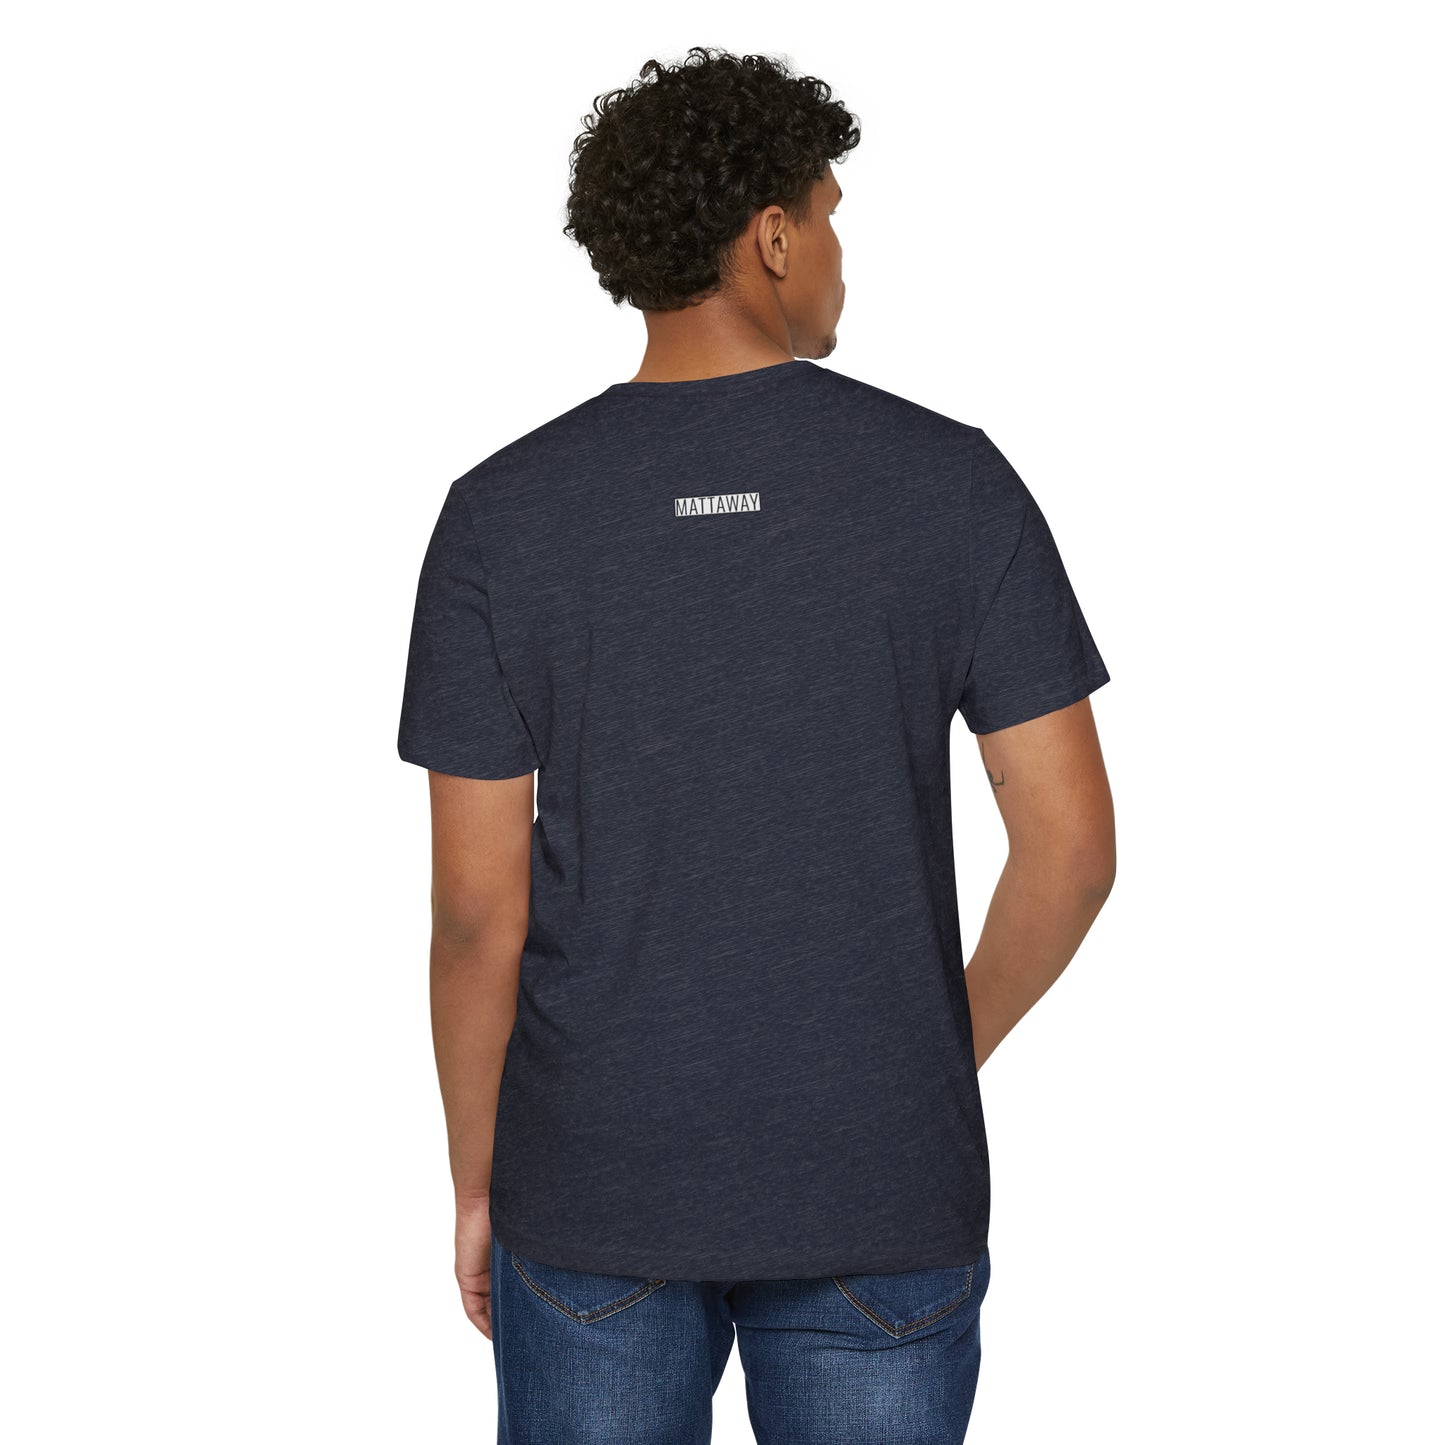 MINIMAL SHAPE 103 - Unisex Recycled Organic T-Shirt